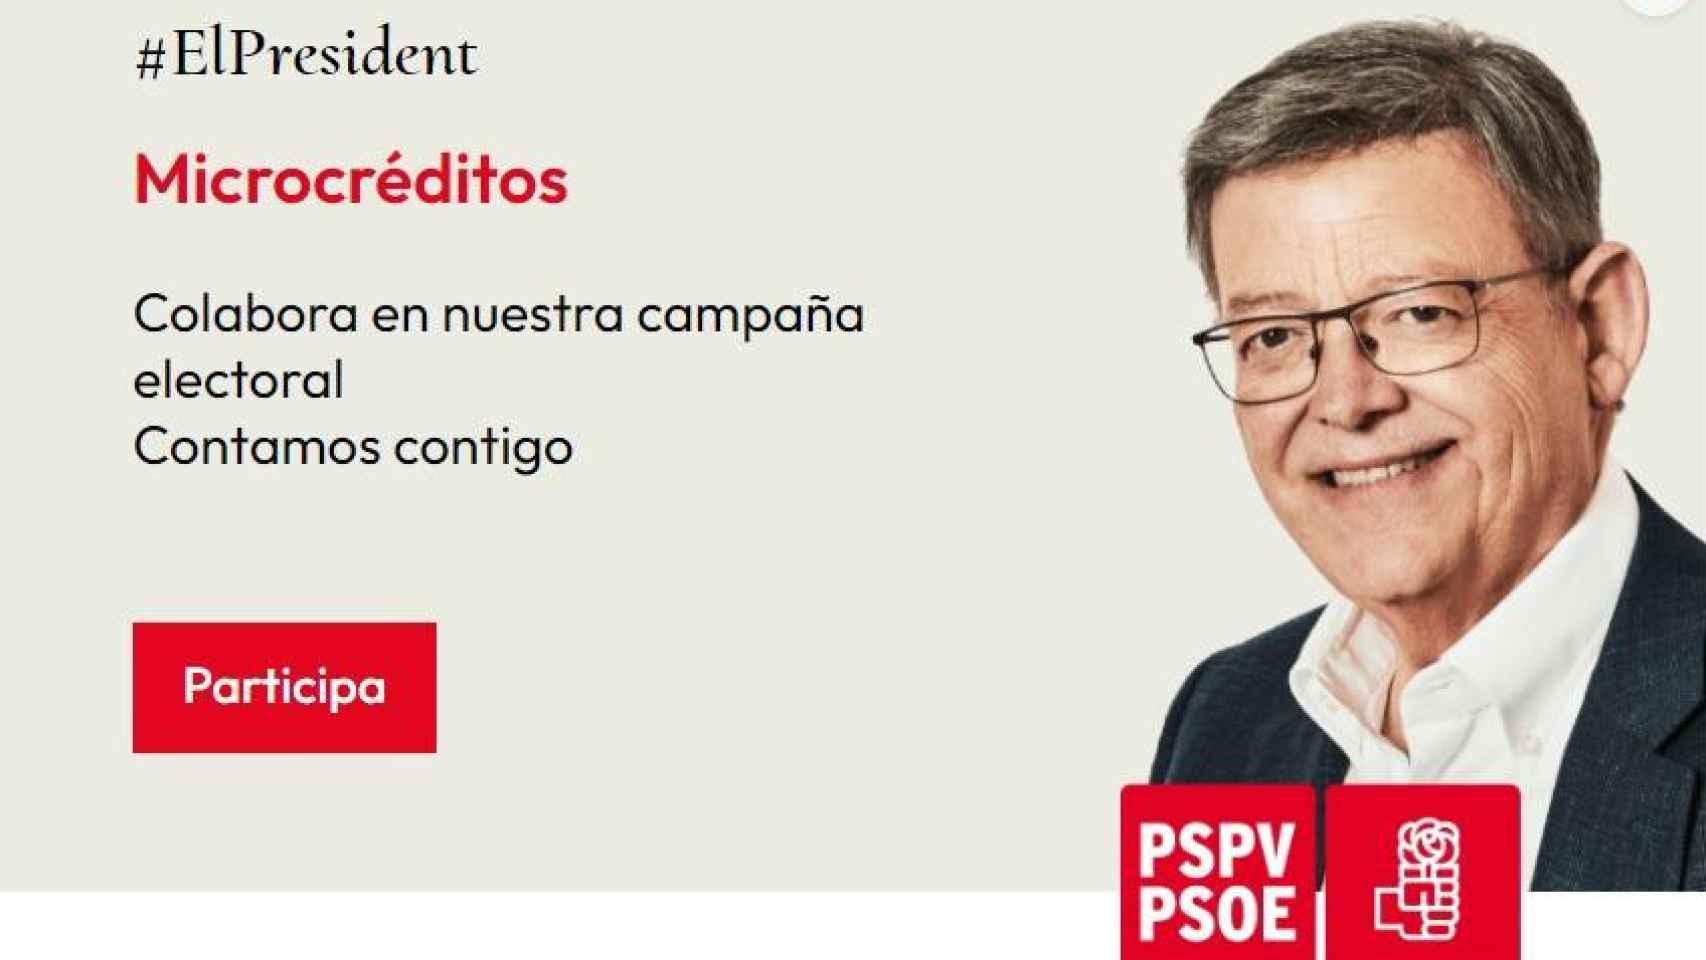 Imagen promocional de la campaña de microcréditos del PSPV-PSOE. EE